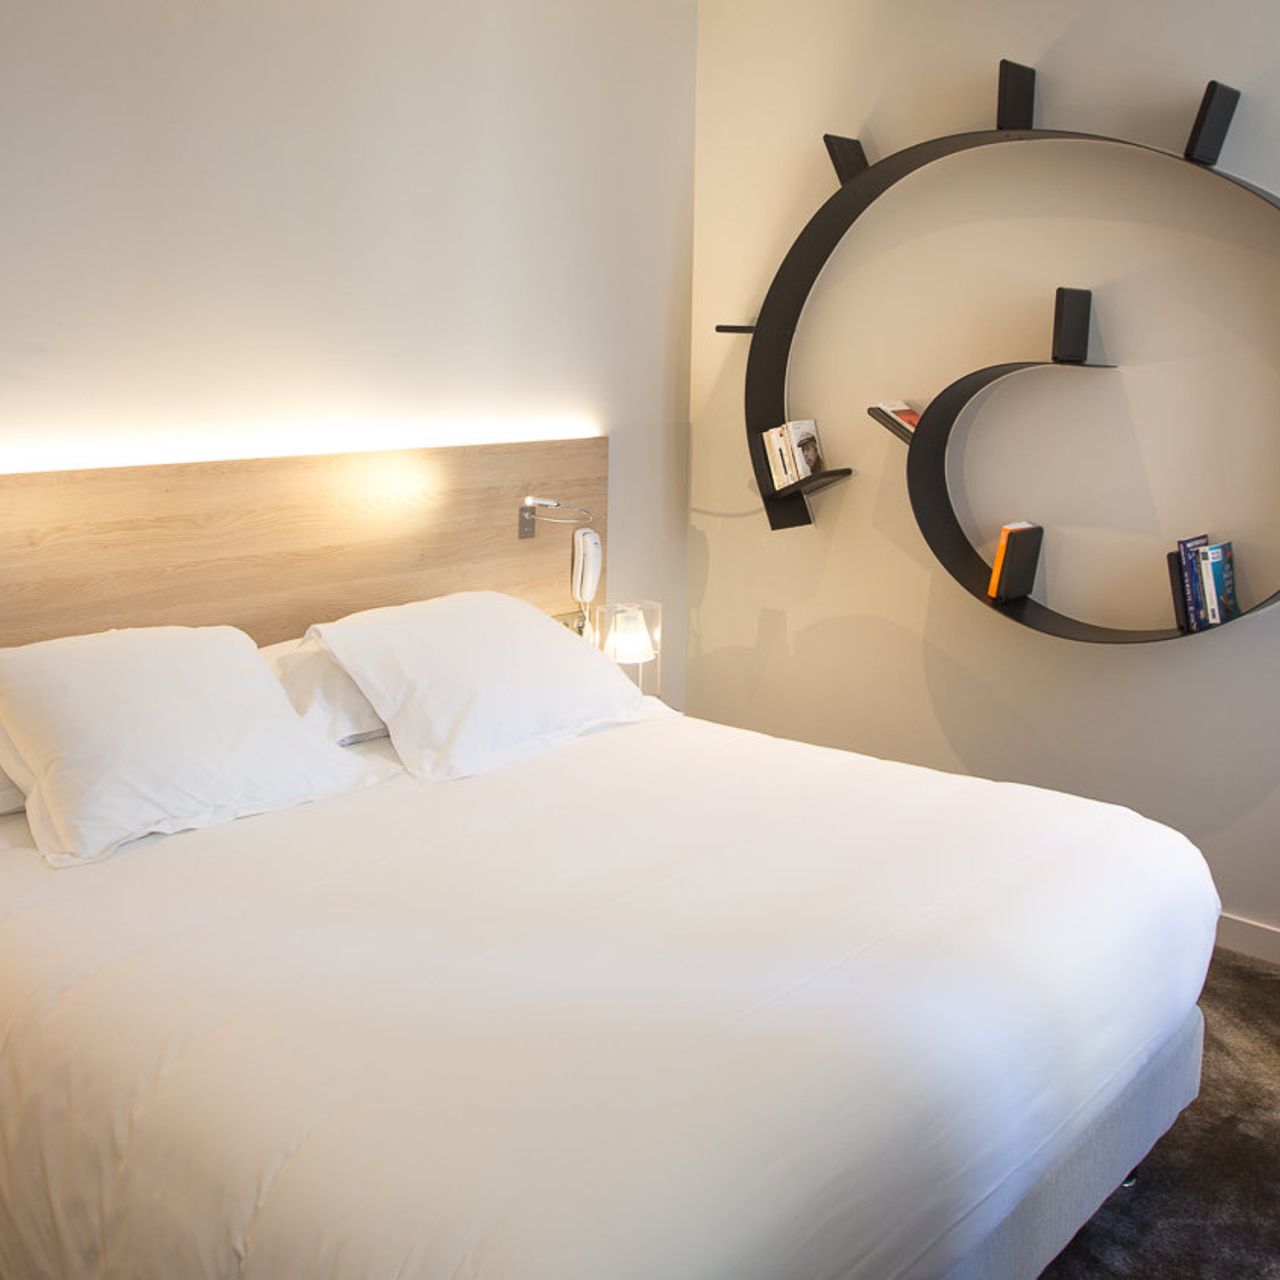 Hotel de France - Valence - HOTEL INFO